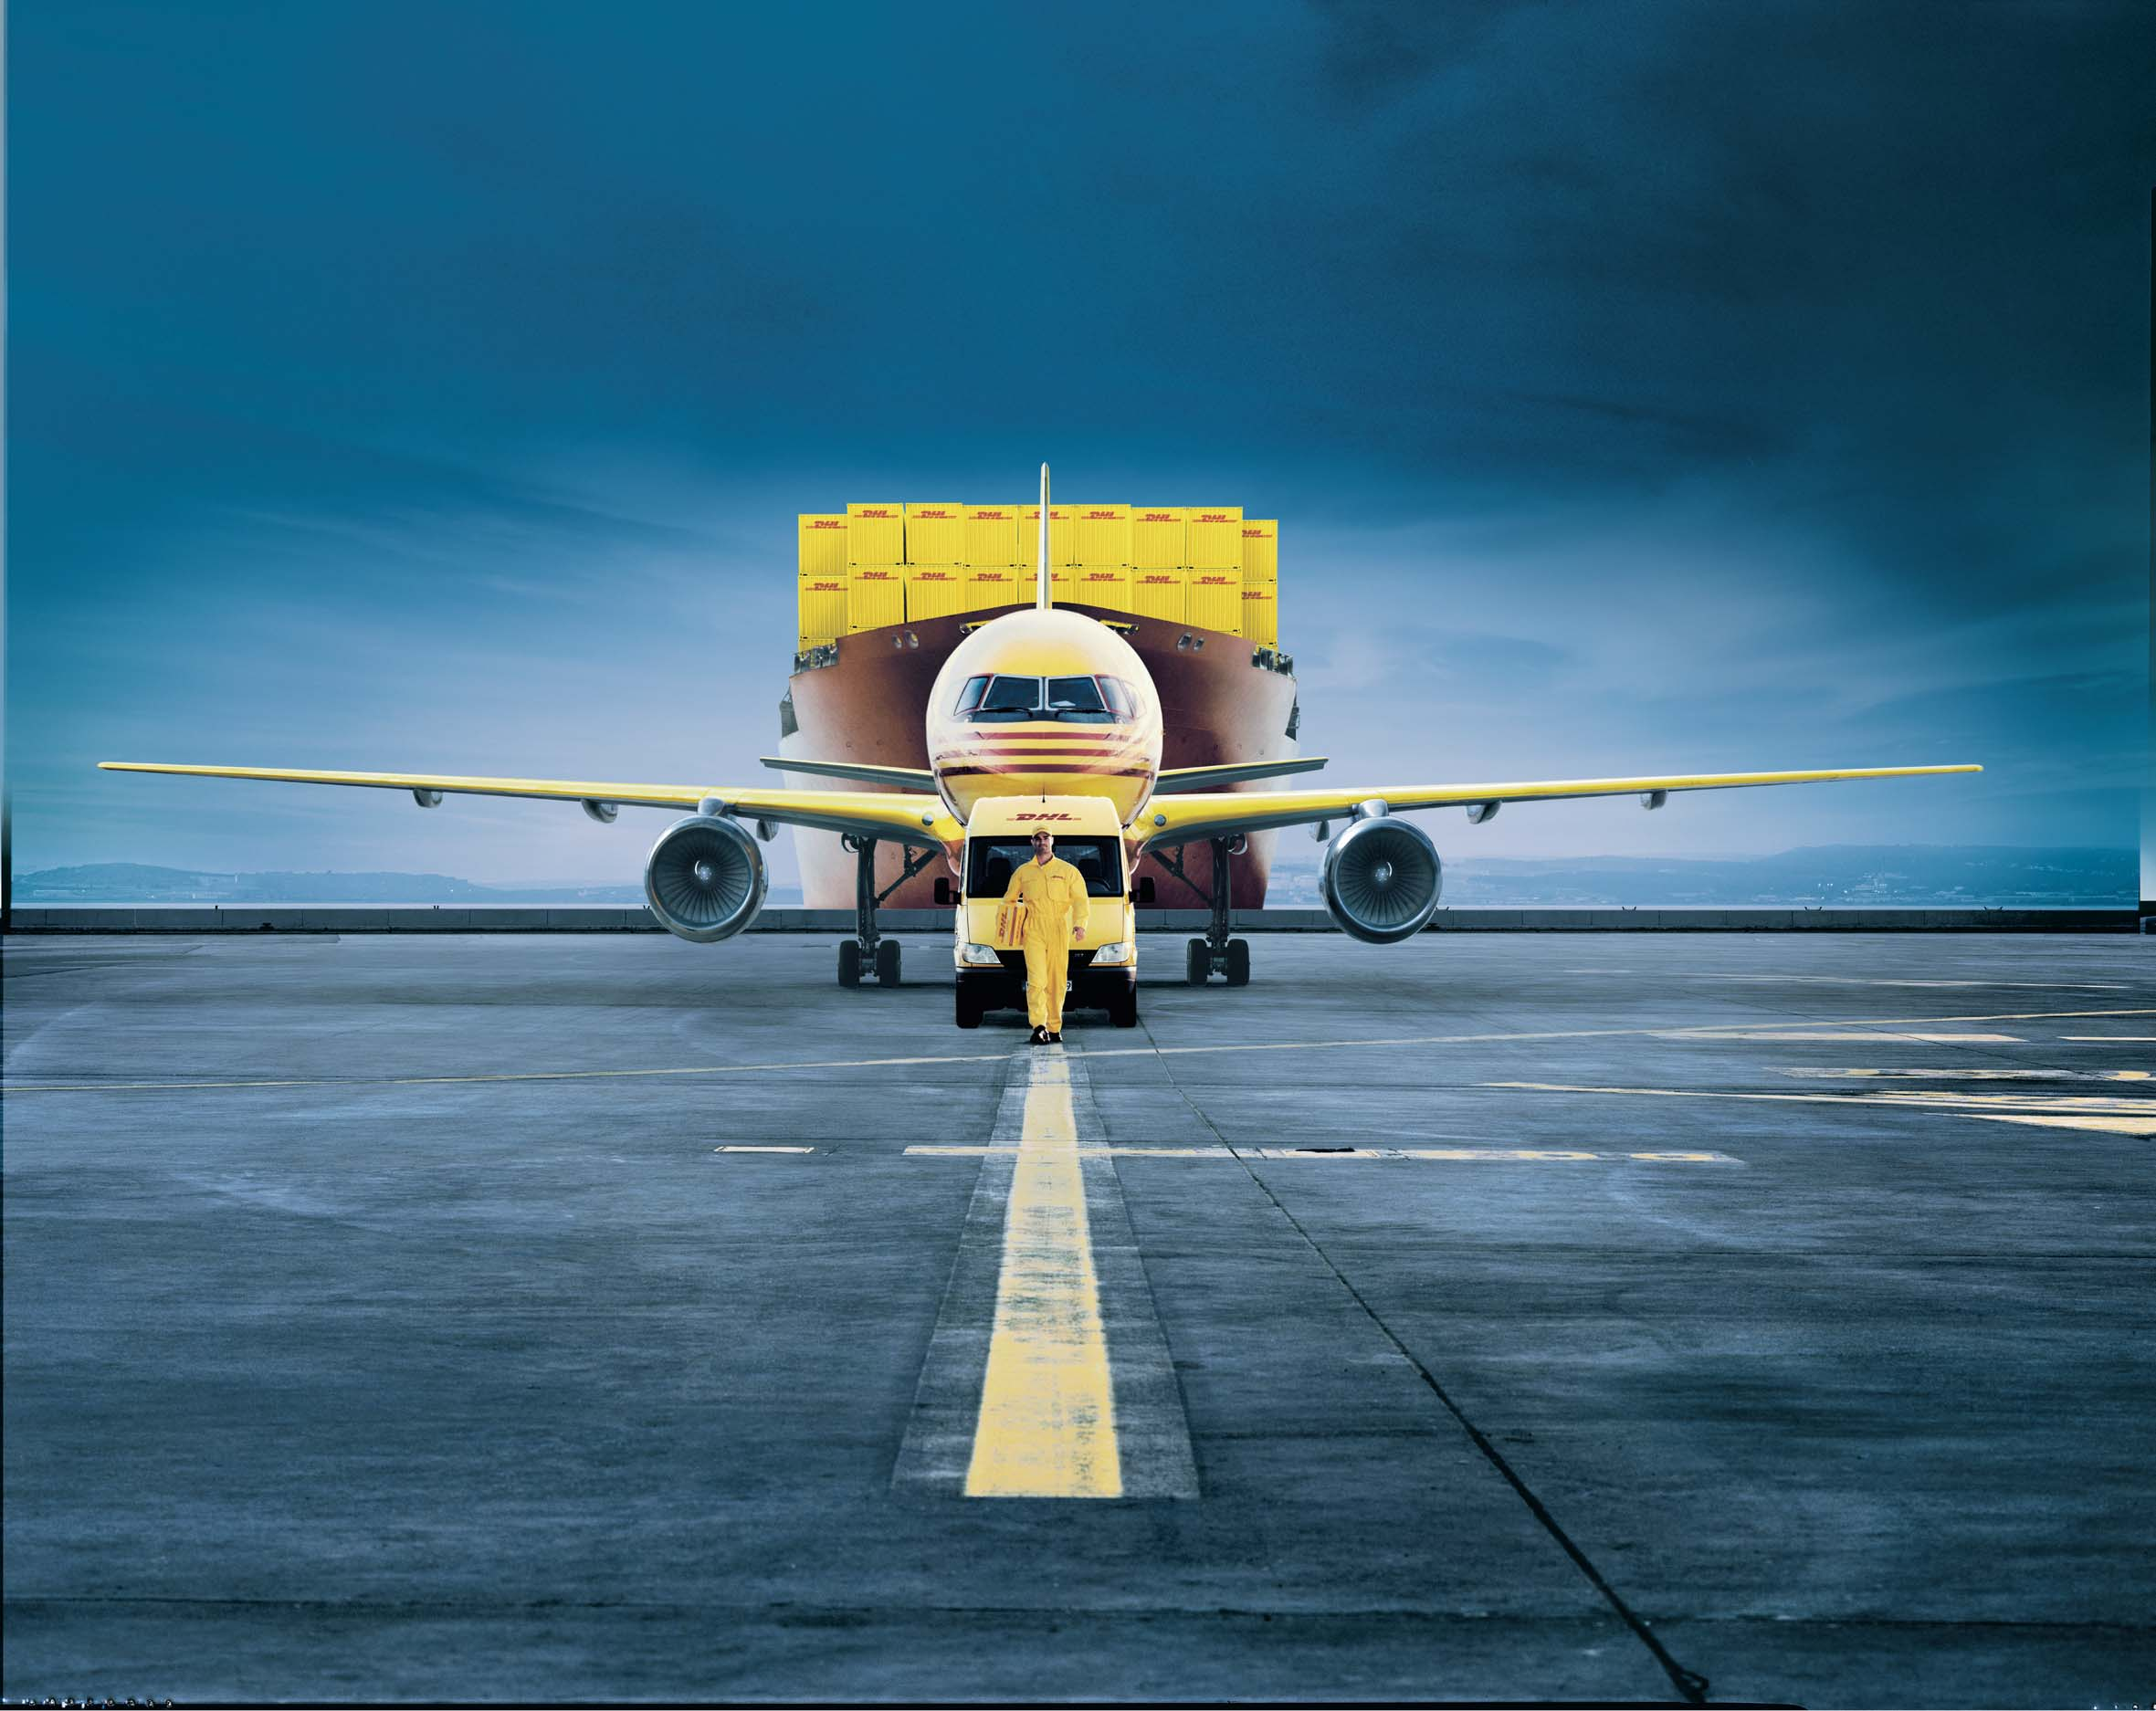 Společnost DHL, člen skupiny Deutsche Post DHL a světový lídr v oblasti přepravy a logistiky se letos stala oficiálním logistickým partnerem RunCzech běžecké ligy, aby zajistila její náročnou